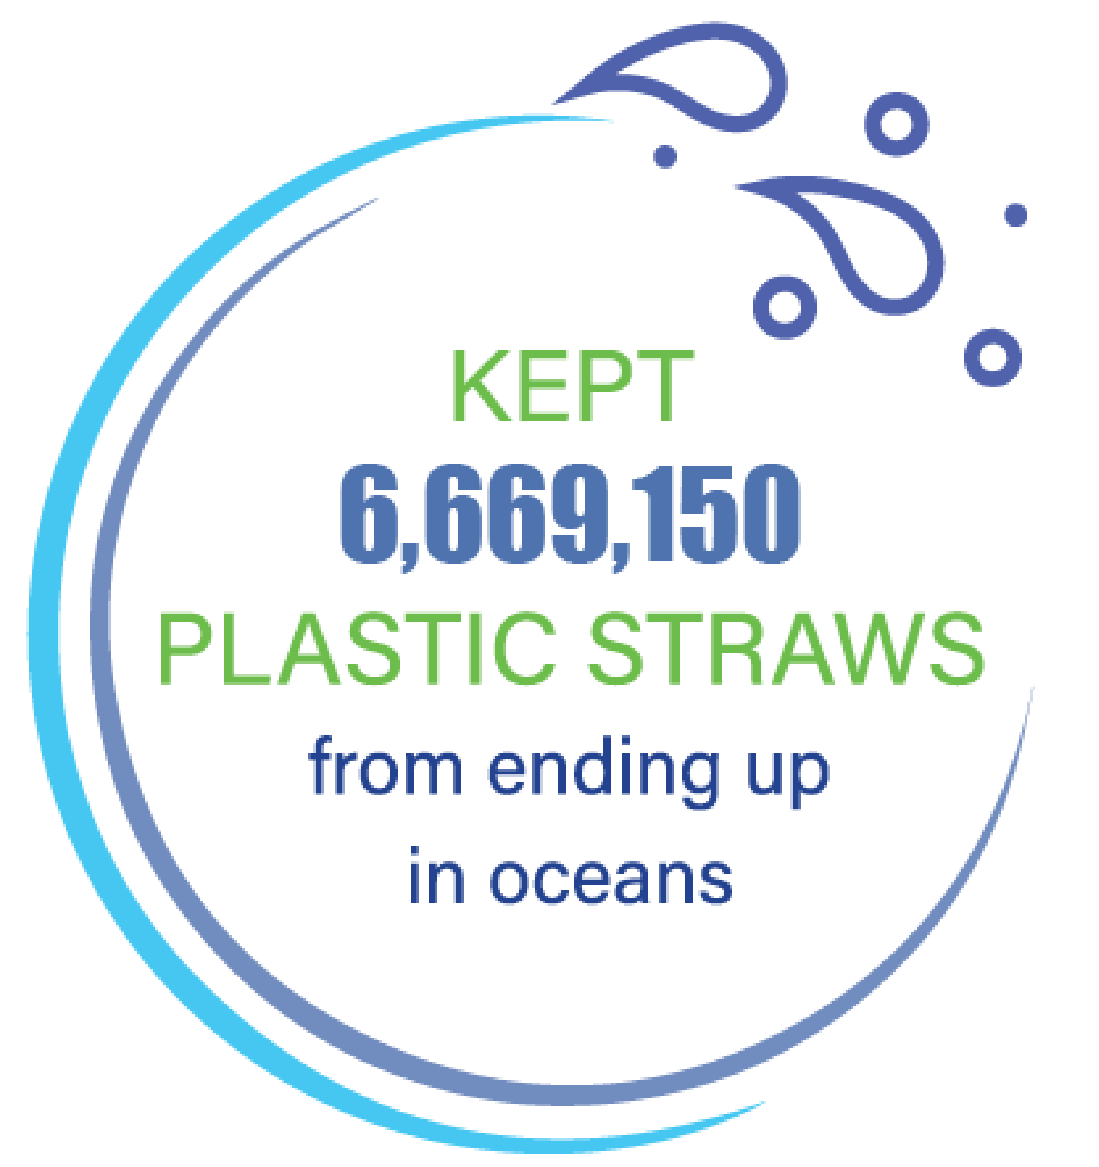 Keeping plastics straws